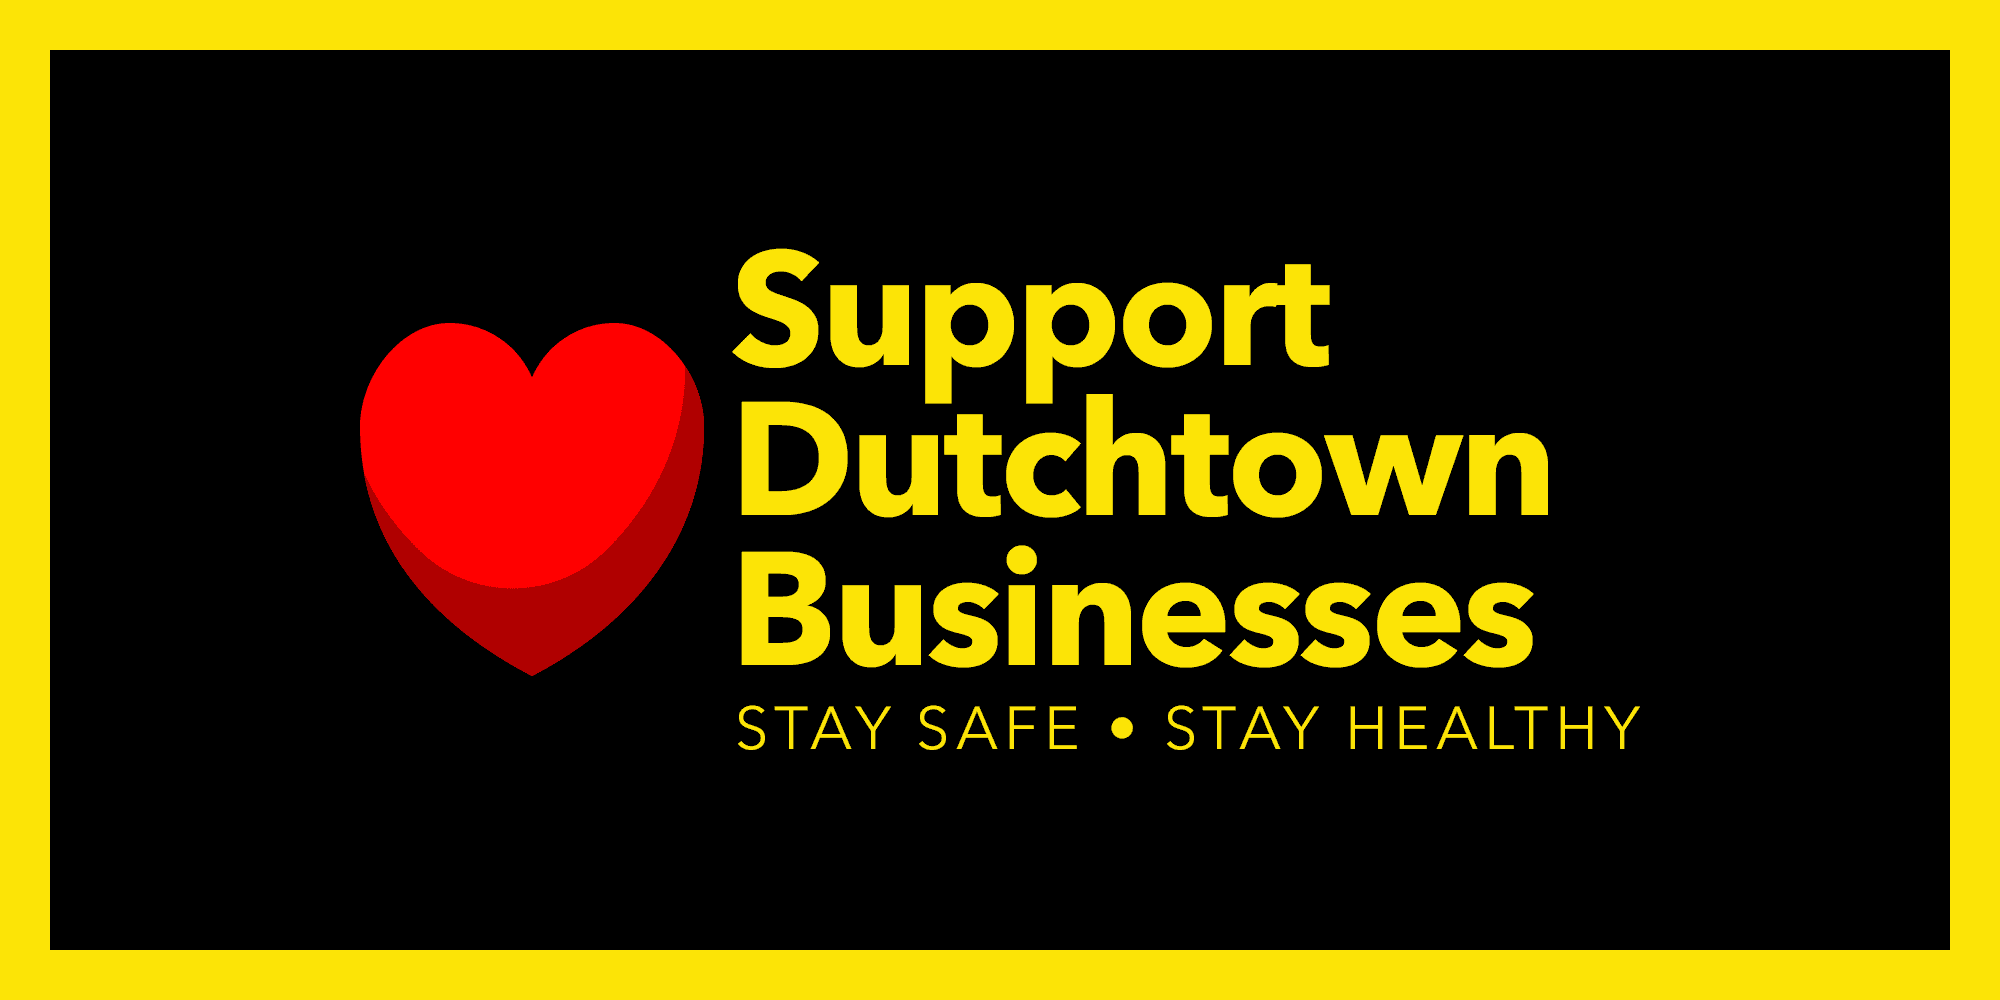 支持荷兰镇业务。 保持安全，保持健康。